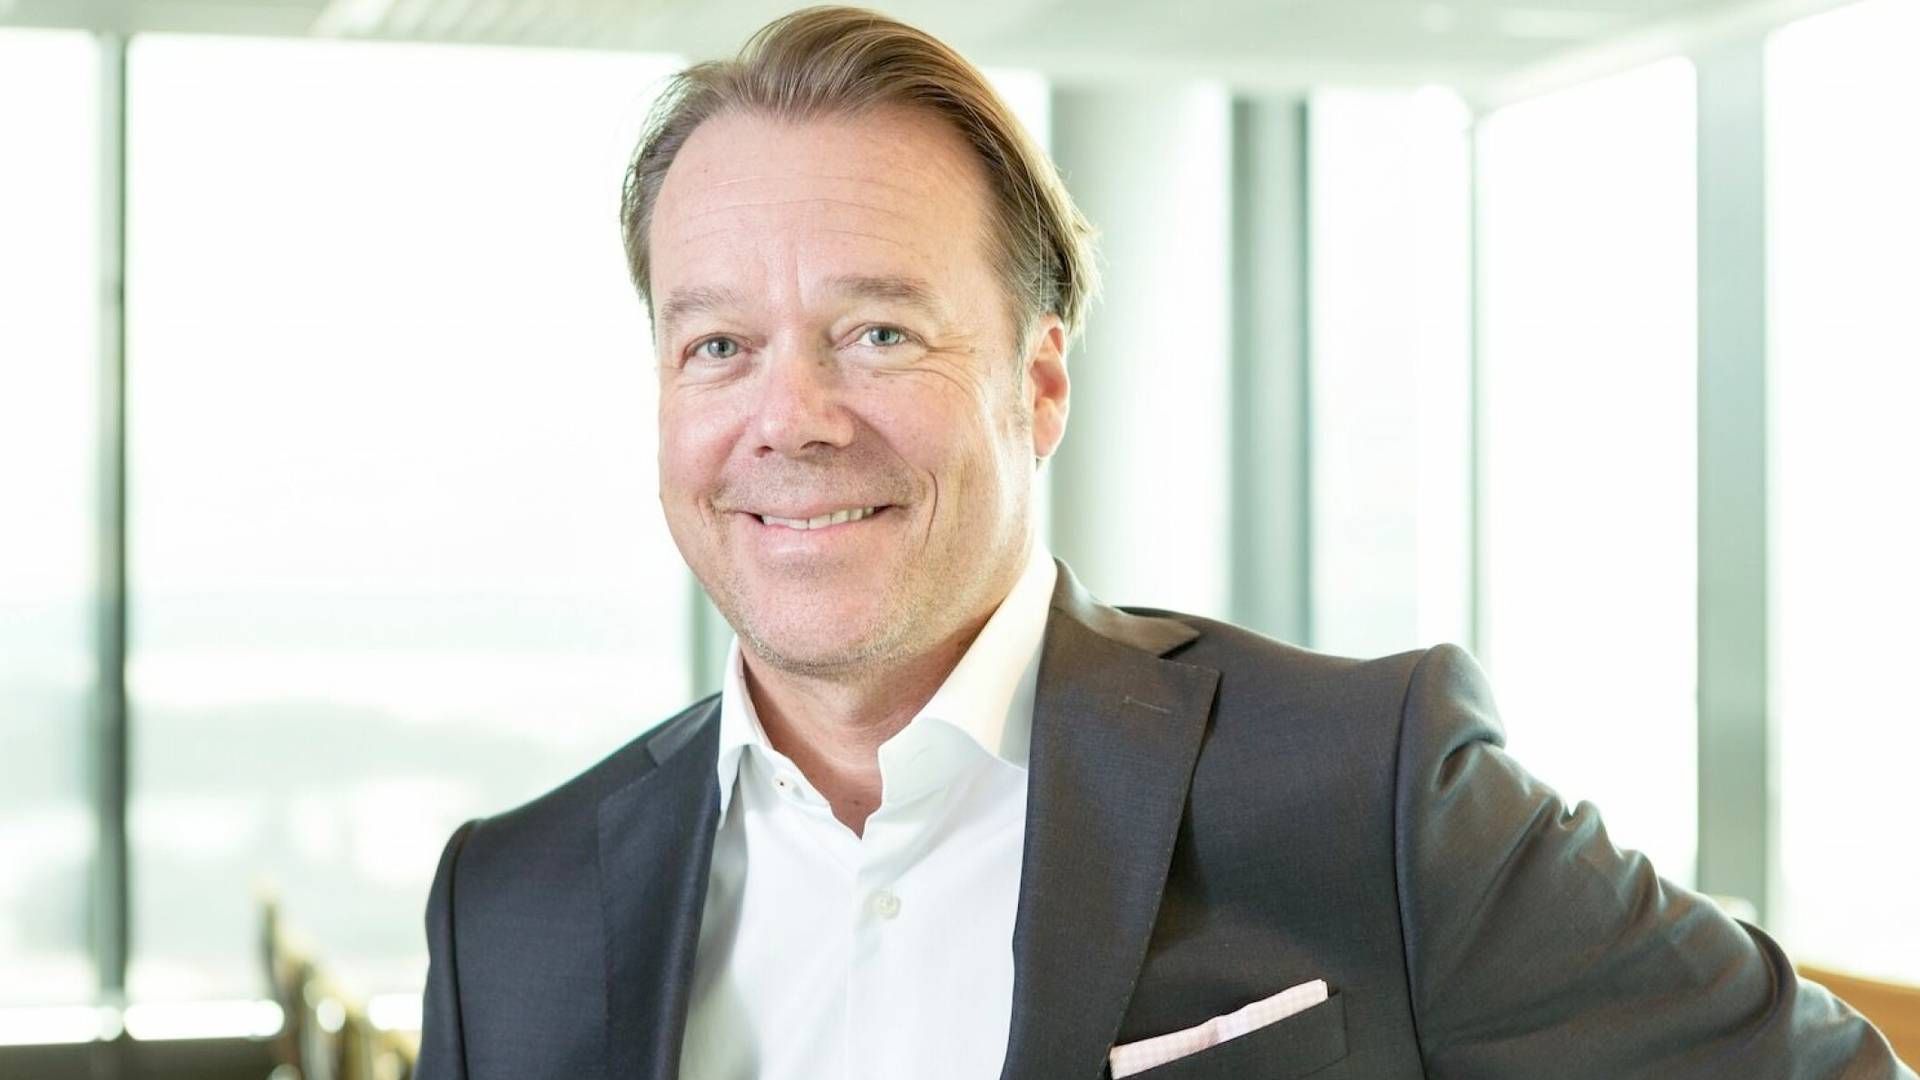 VIL IKKE SELGE: Henrik Melder, sjef for SBB i Norge | Foto: Hemfosa